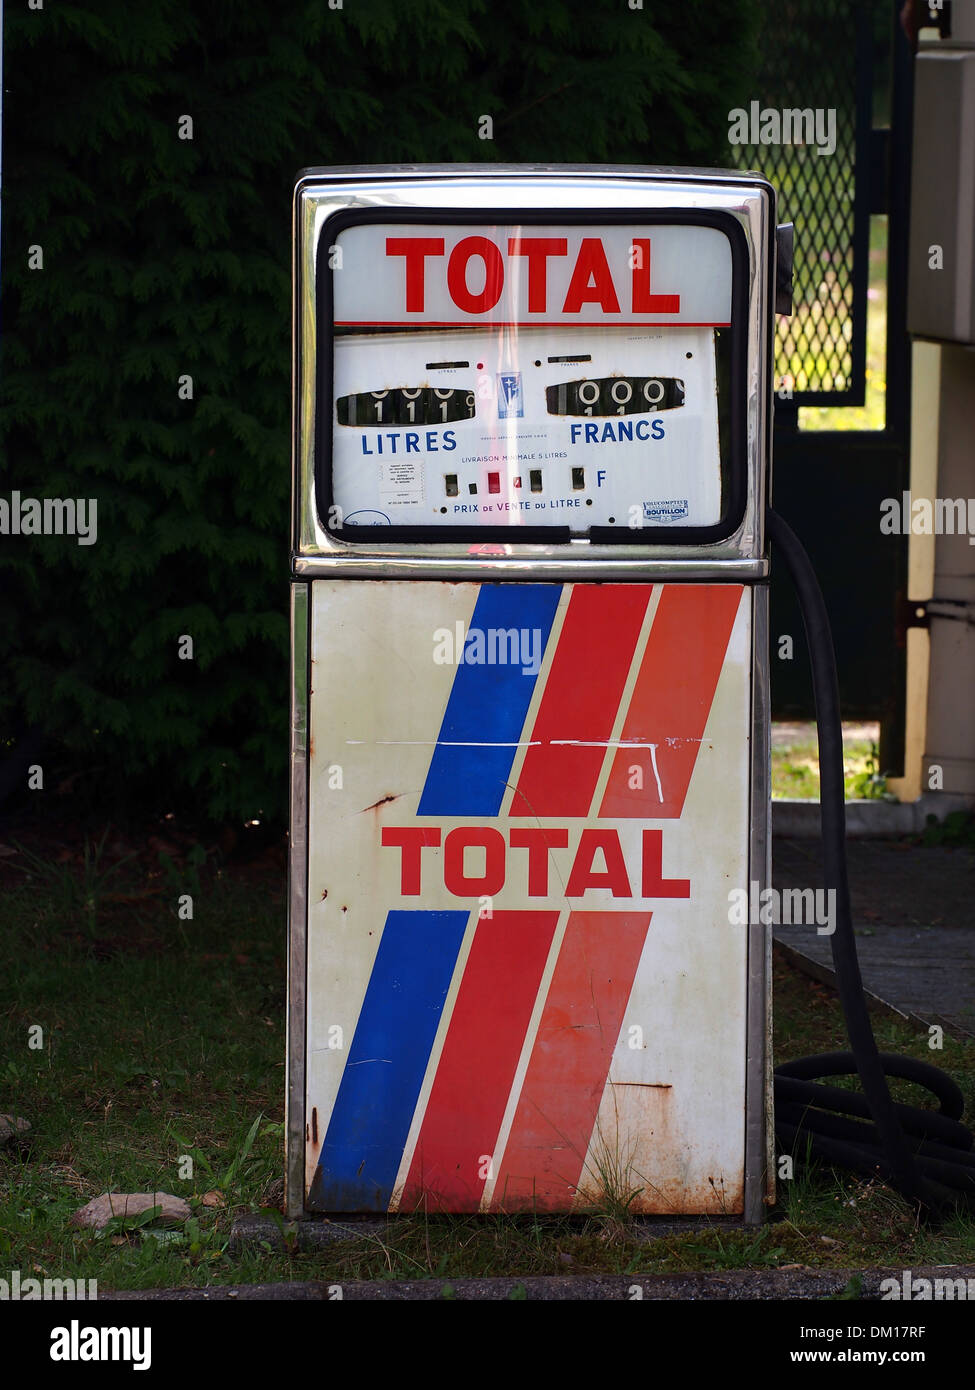 Total Petrol Banque d'image et photos - Page 2 - Alamy